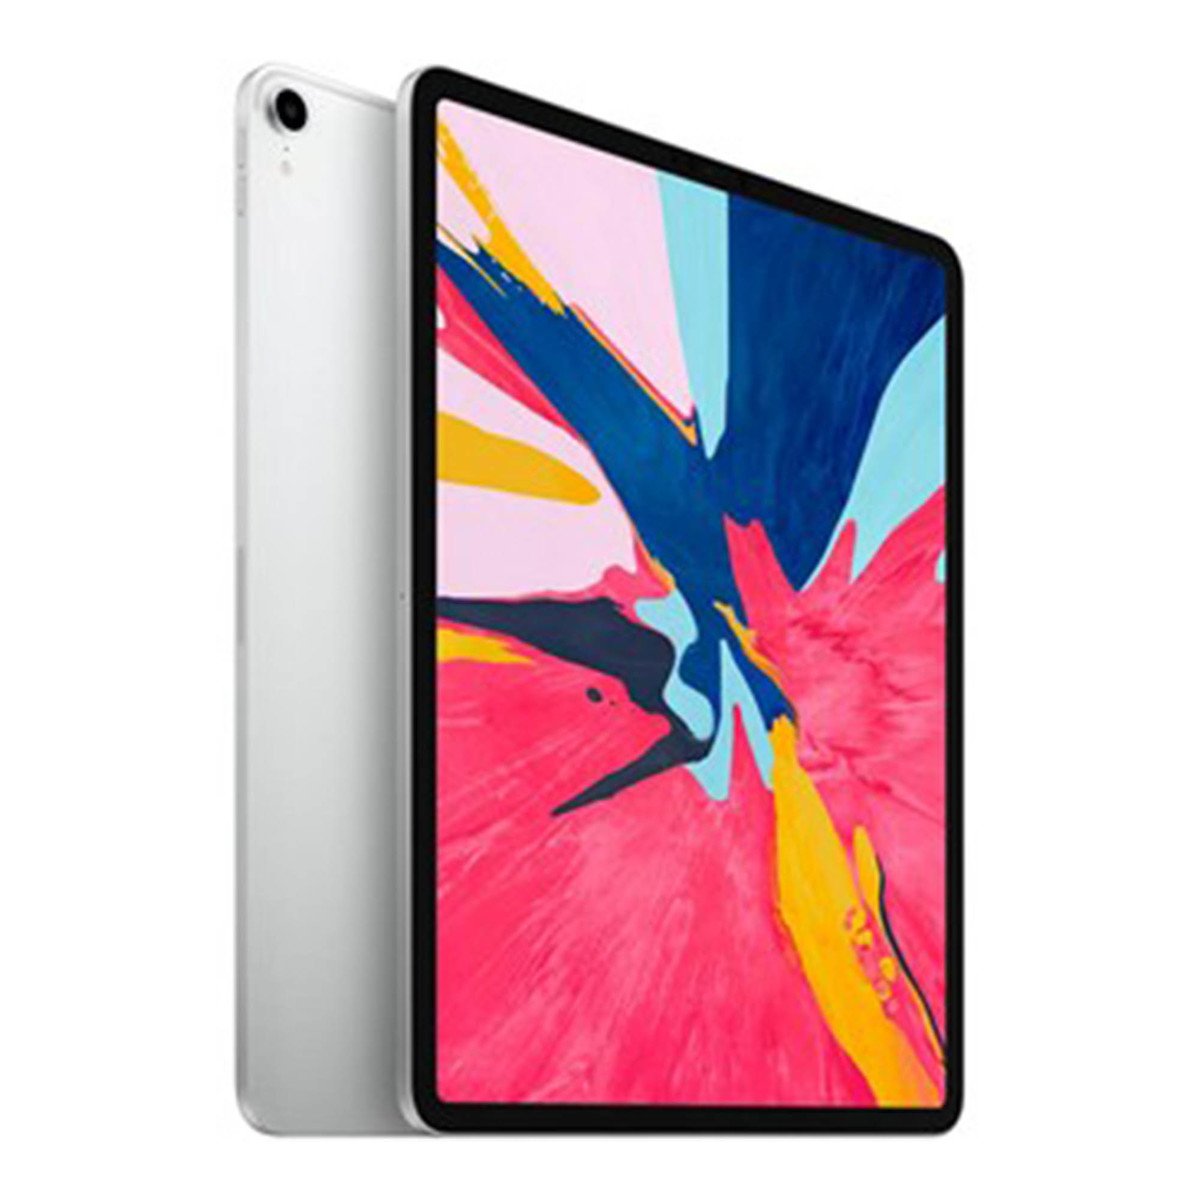 Apple iPad Pro 12.9inch Wifi 64GB Silver